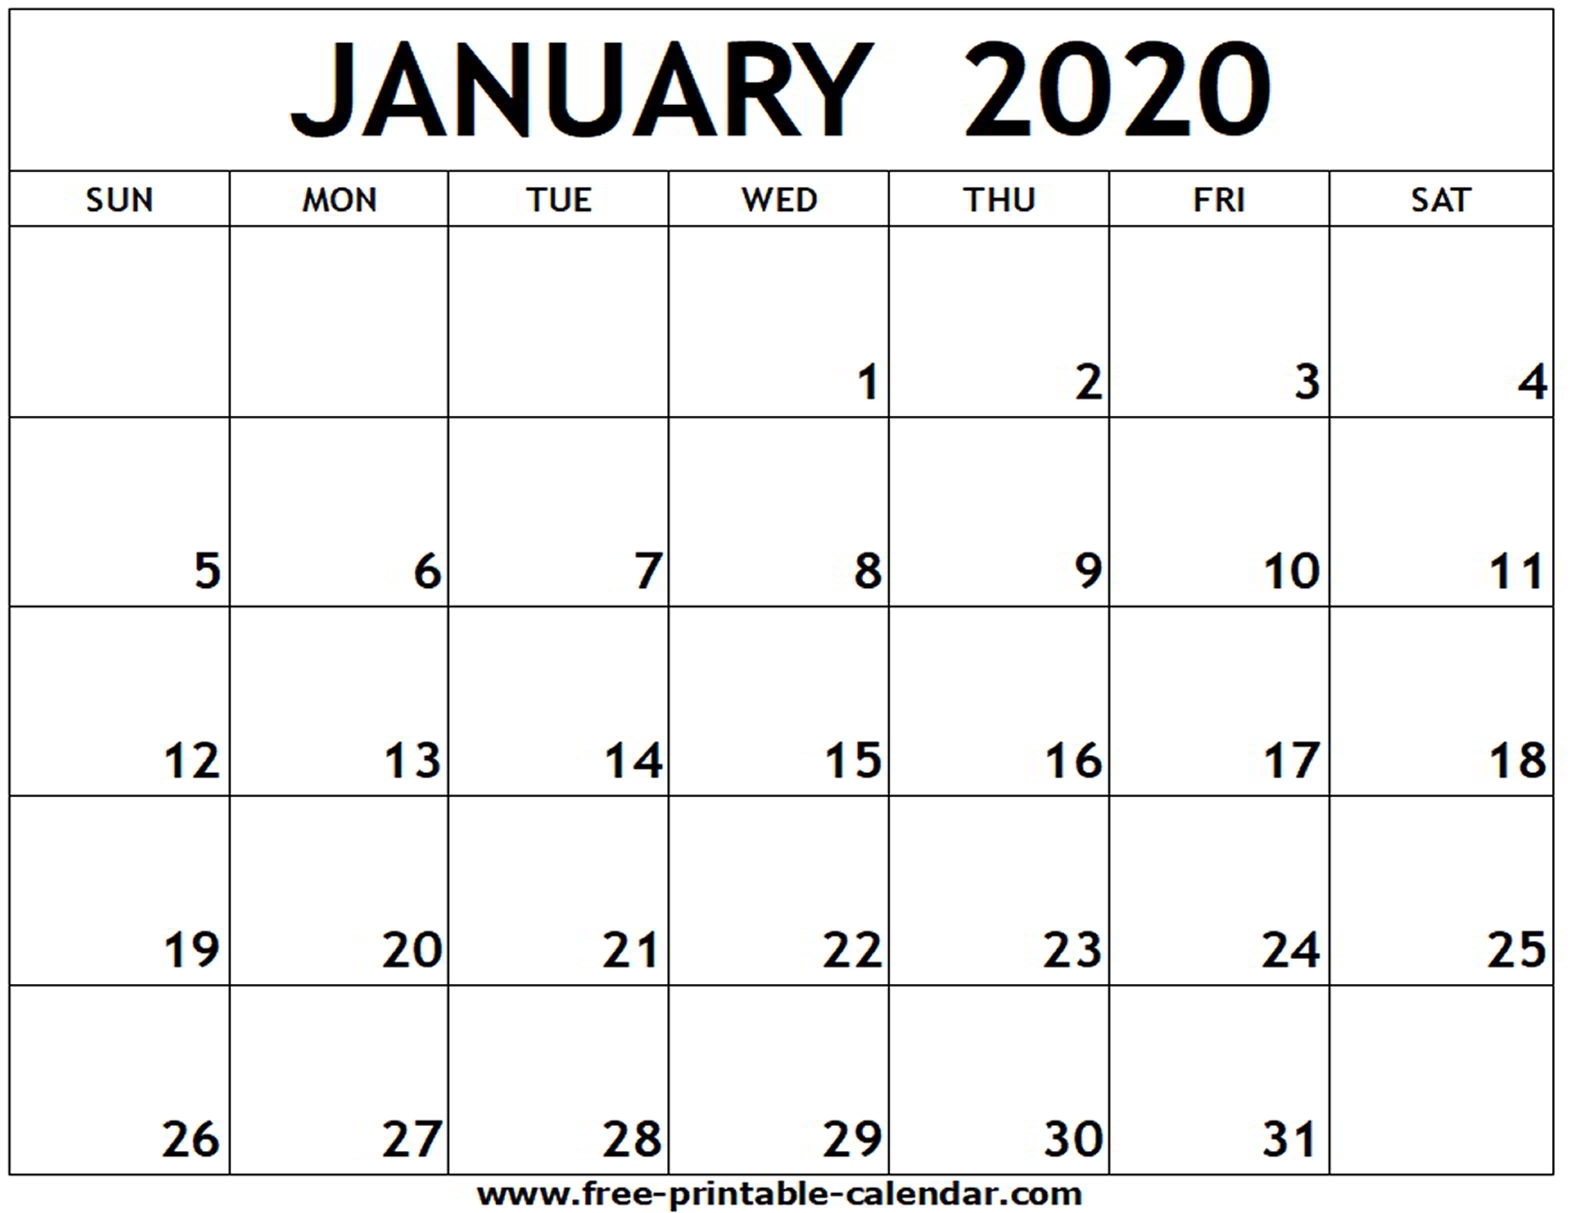 January 2020 Printable Calendar - Free-Printable-Calendar-Printable January 2020 Calendar